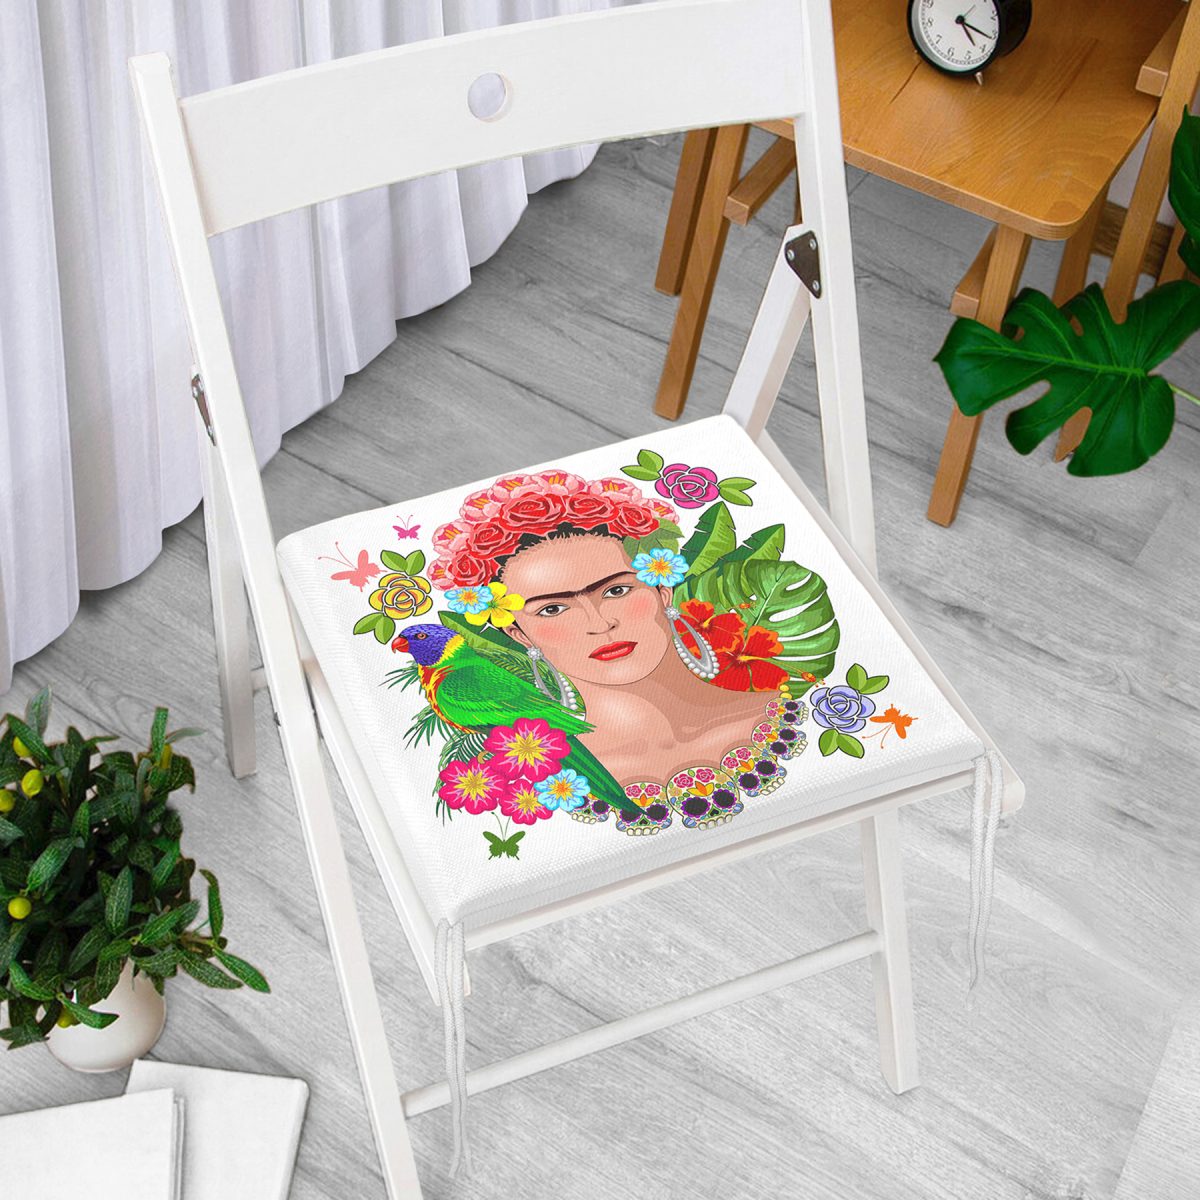 Özel Tasarım Frida Kahlo Tasarımlı Dekoratif Fermuarlı Sandalye Minderi Realhomes